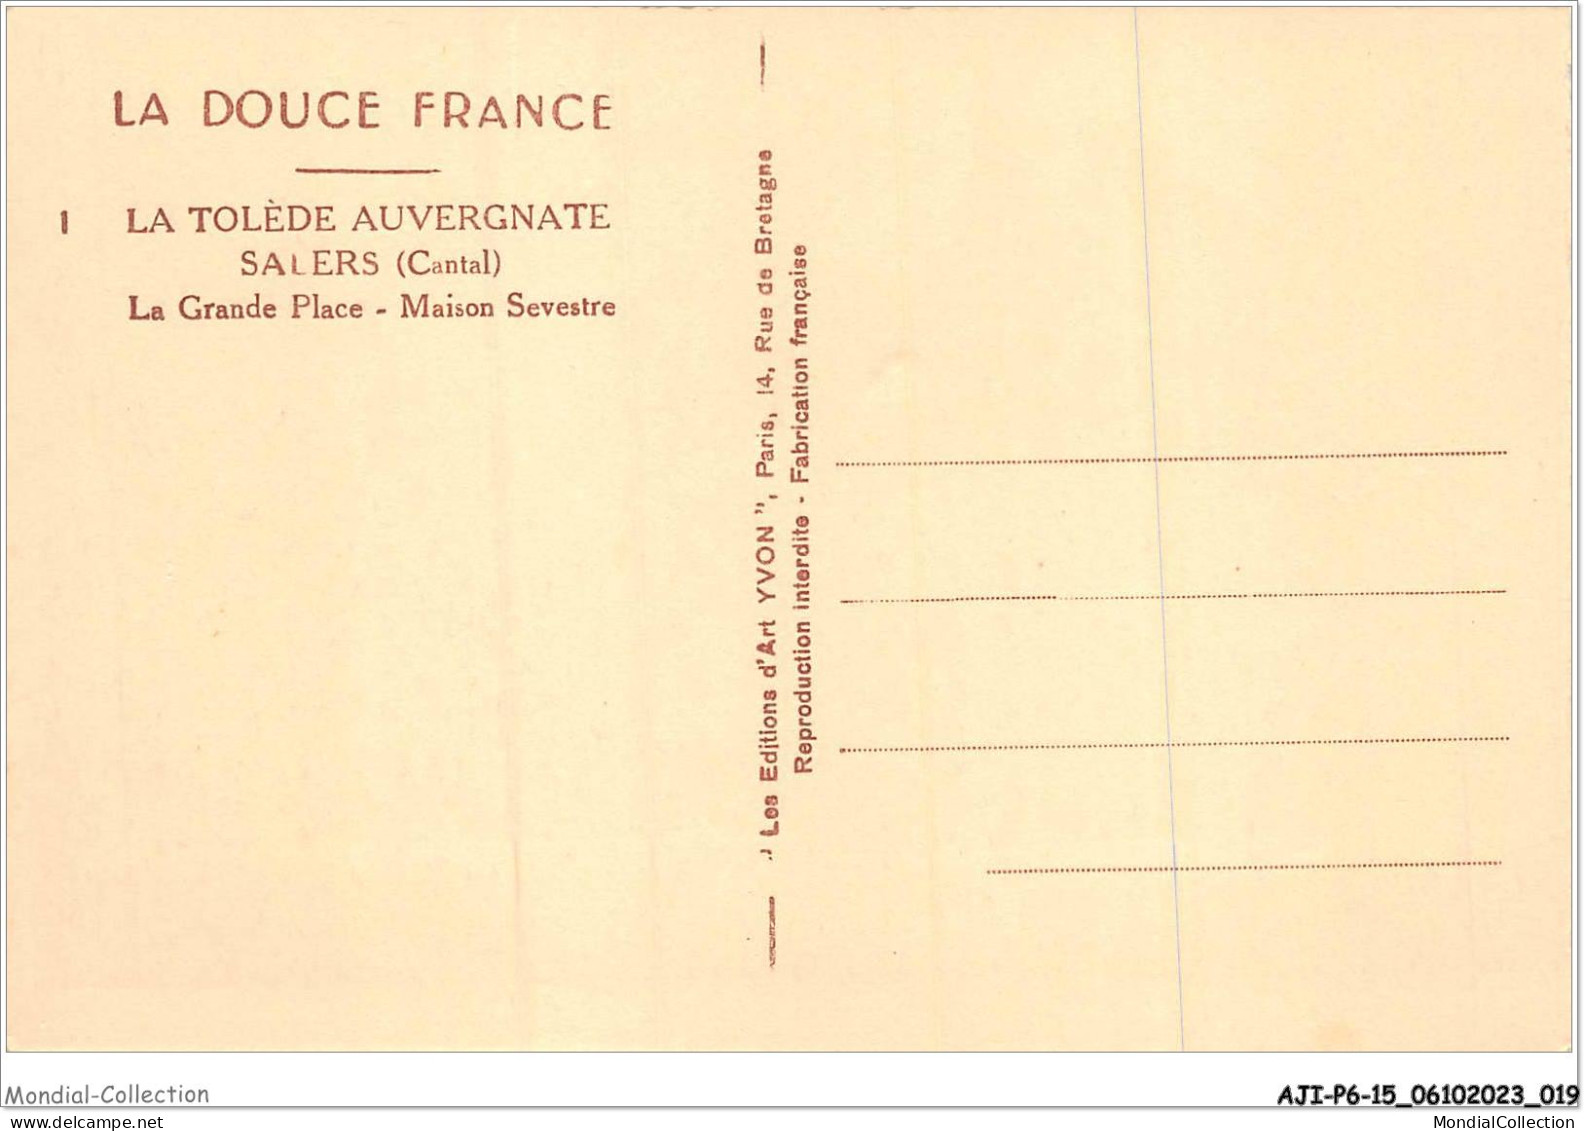 AJIP6-15-0561 - La Douce France - La Tolède Auvergnate - SALERS - Cantal - La Grande Place - Maison Sevestre - Mauriac